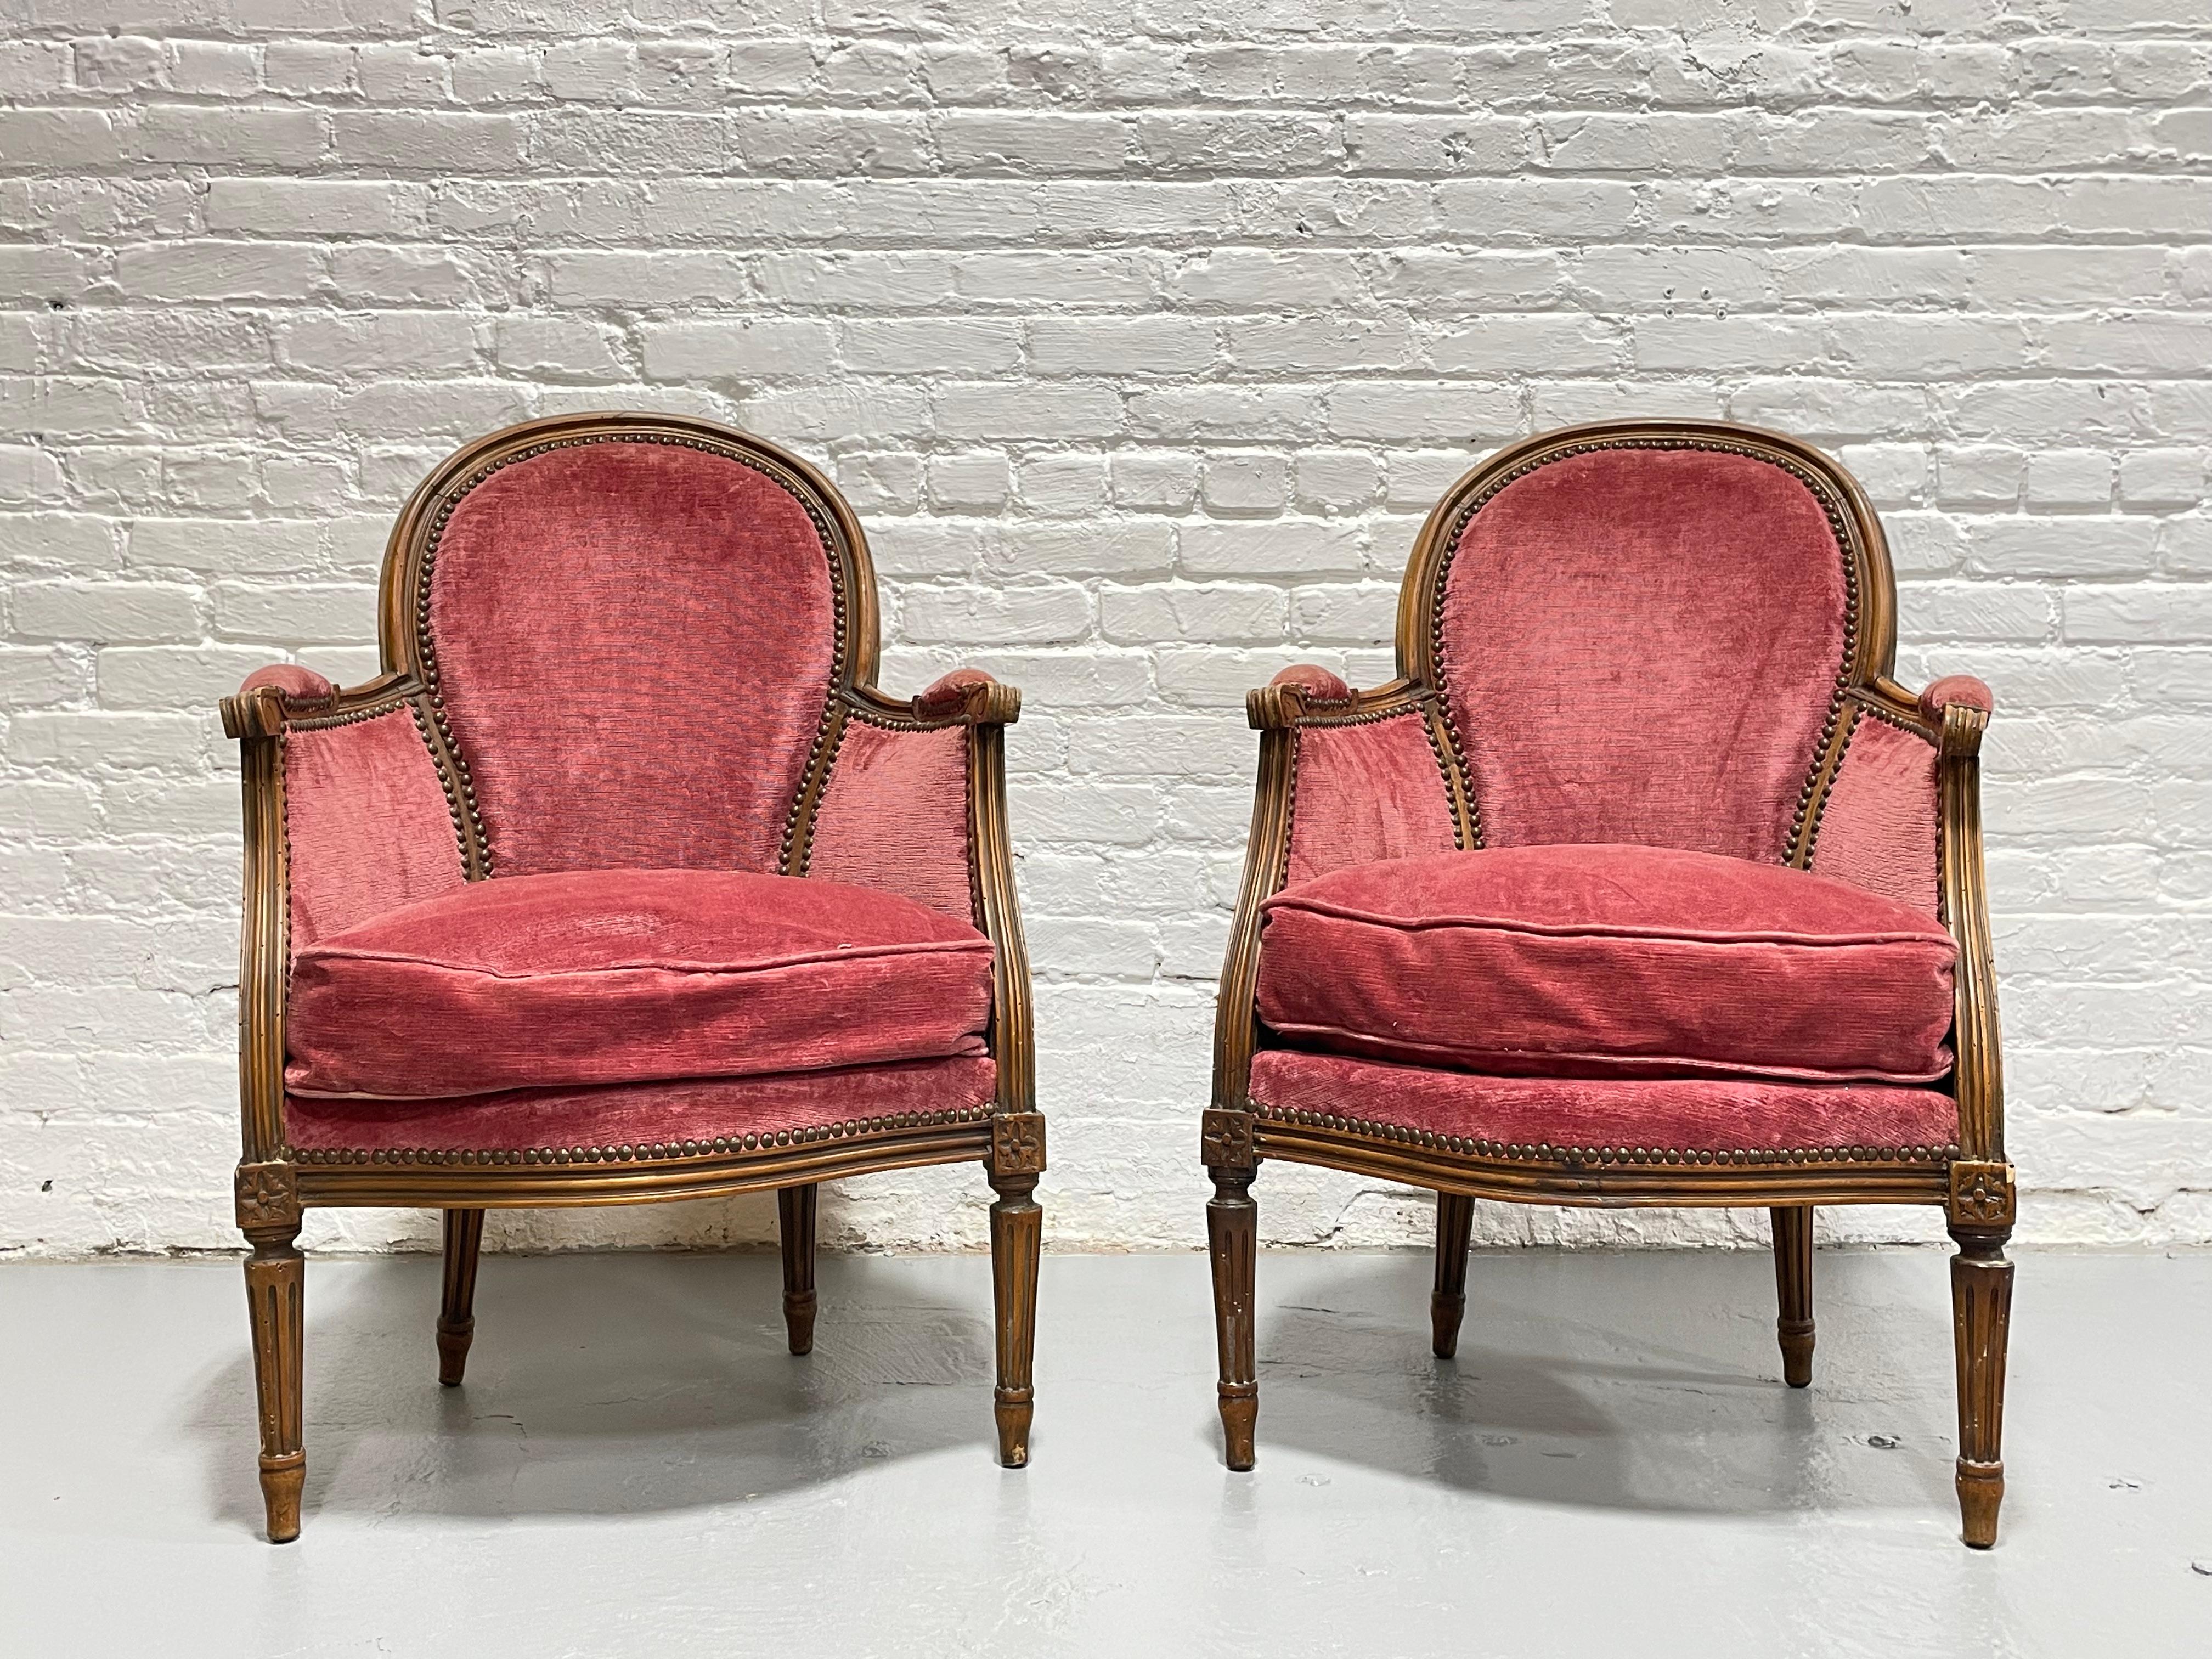 Wunderschönes Paar französischer Bergère-Sessel im Stil Louis XV, um 1940. Gepolstert mit einem schönen rosa Samtstoff, der sehr bequem und gut gepolstert ist und eine gute Unterstützung bietet. Der Stuhl verfügt über gepolsterte Armlehnen,